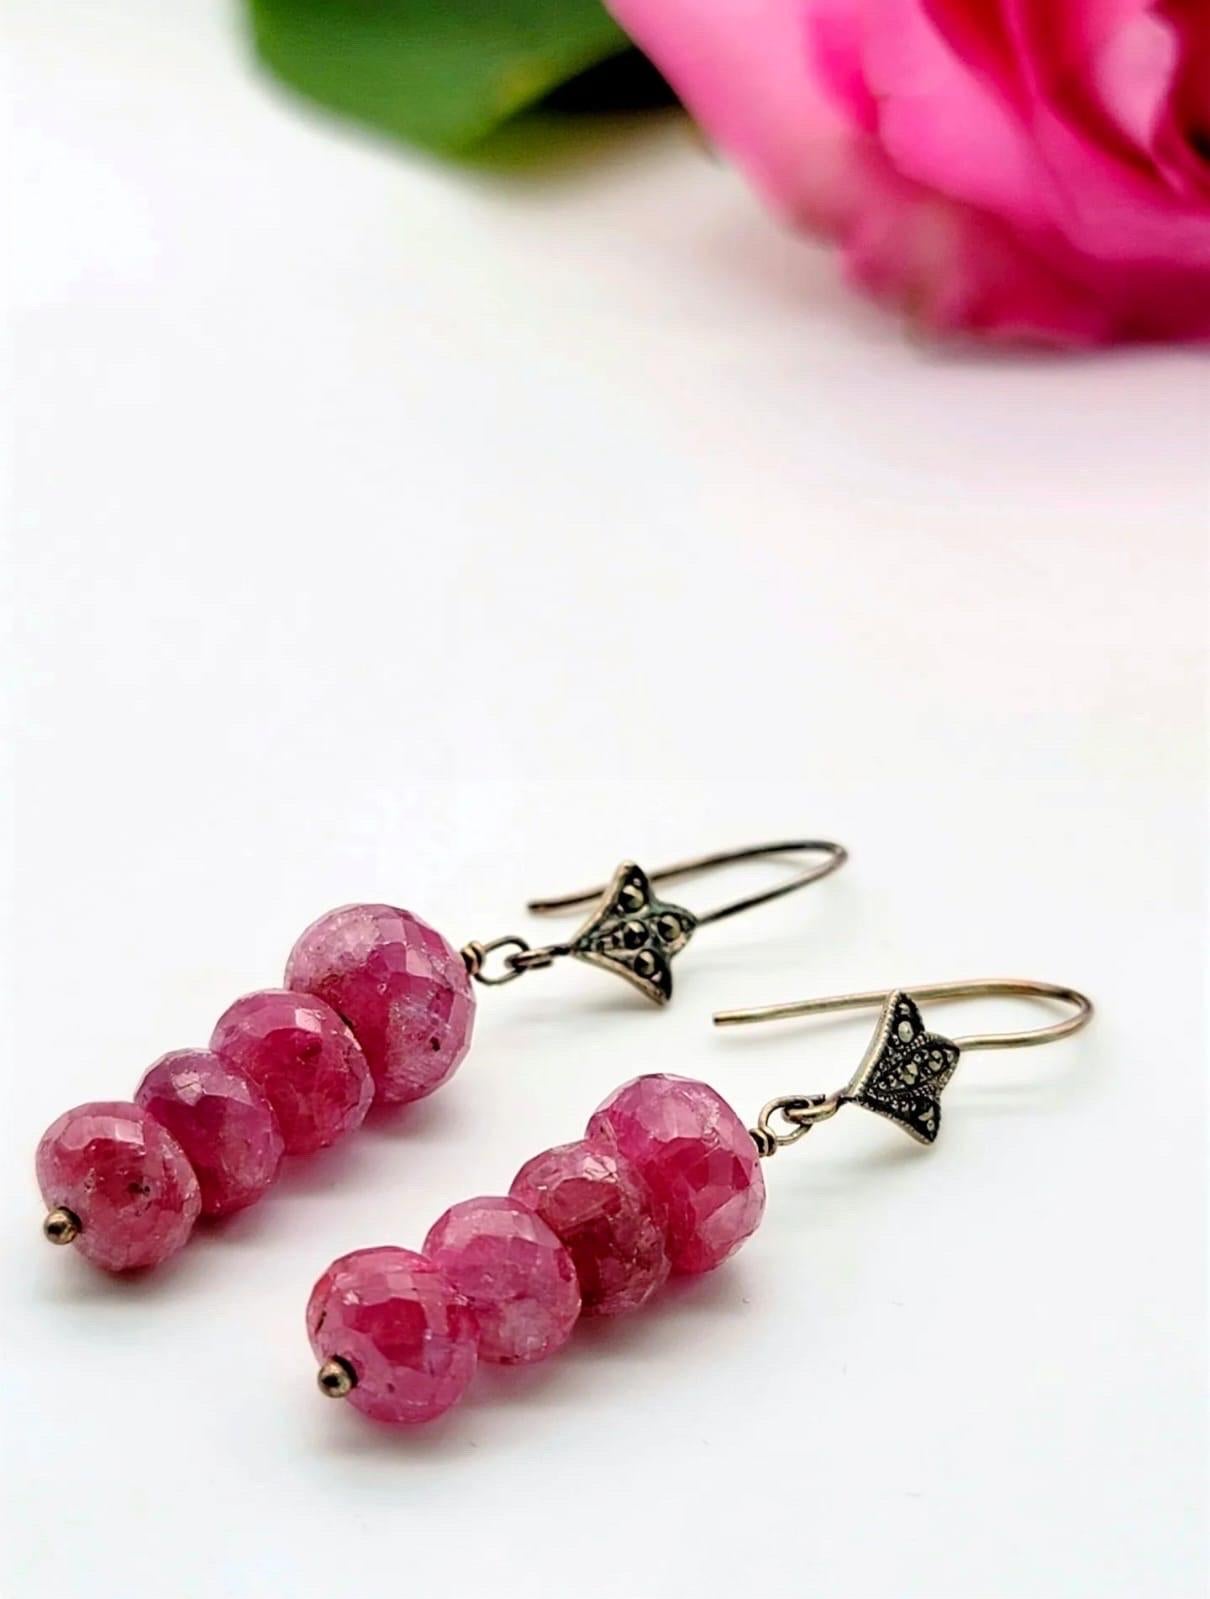 Bead A.Jeschel  Pink Sapphire earrings. For Sale